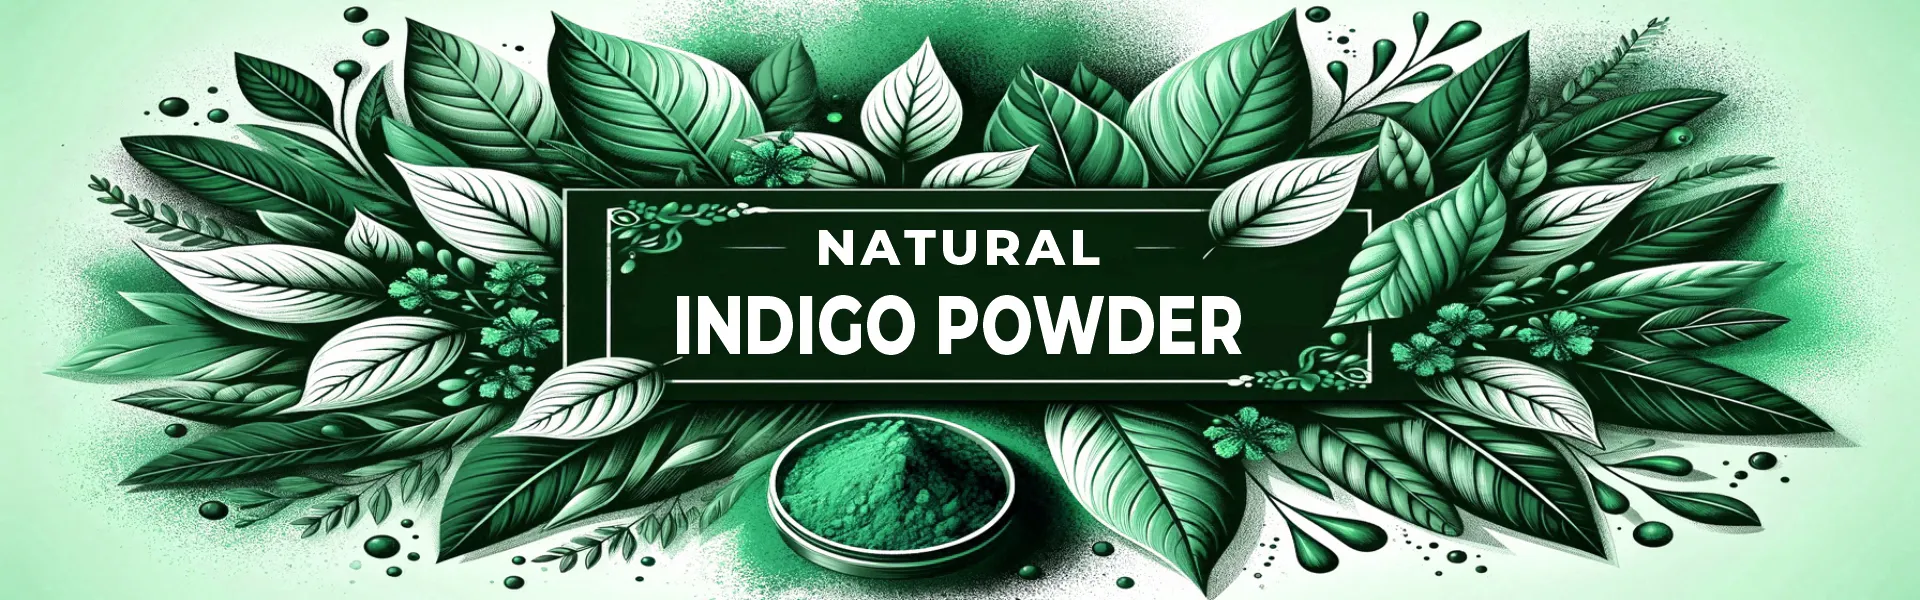 Indigo Powder manufacturer - www.dkihenna.com